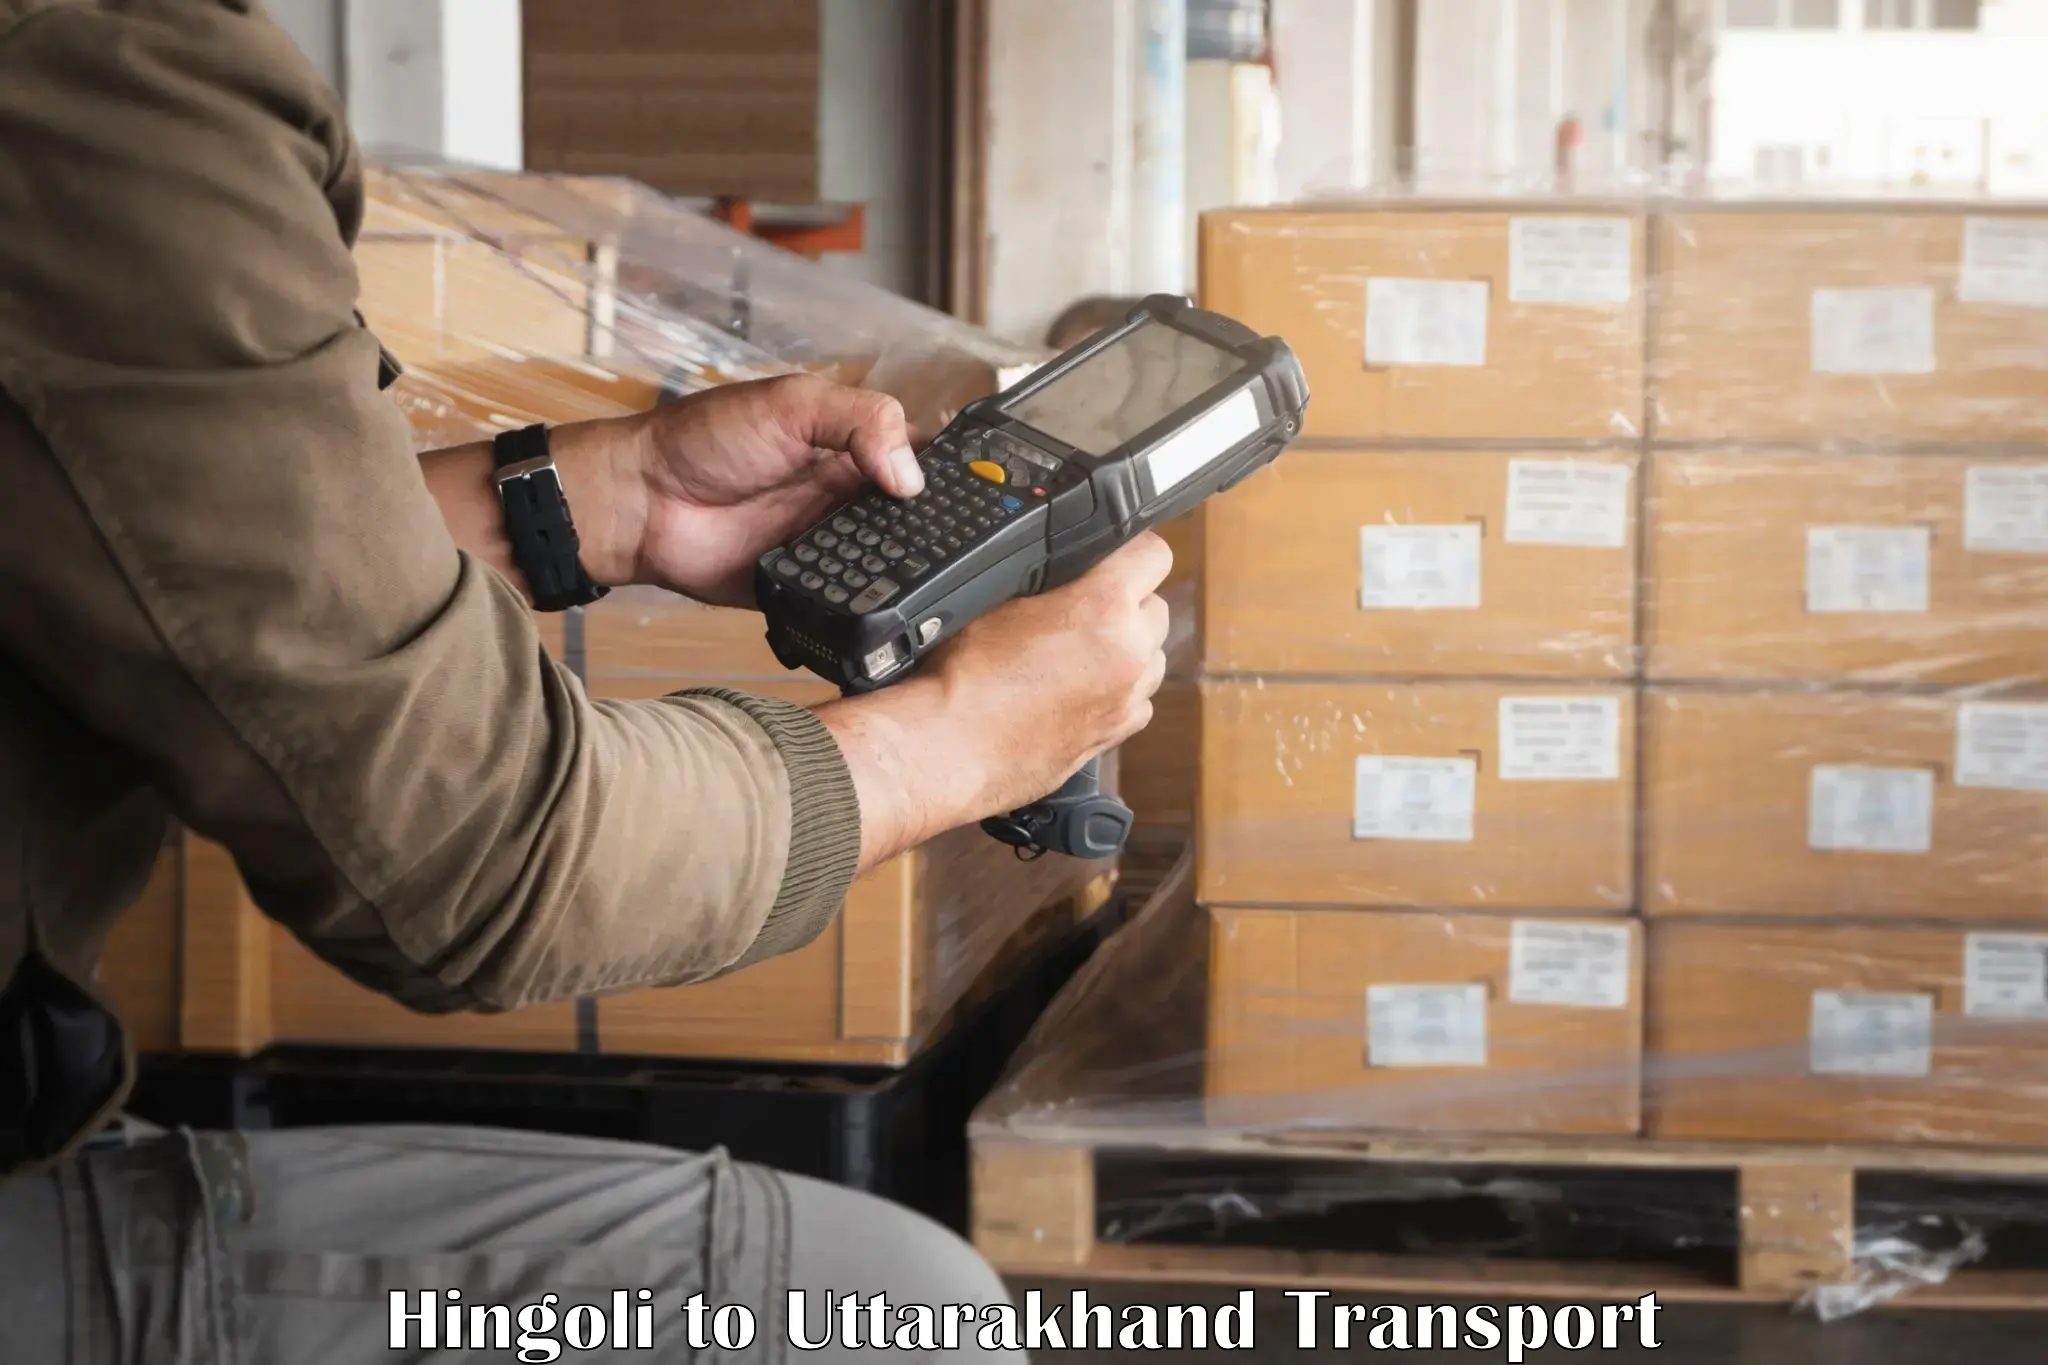 Commercial transport service Hingoli to Gopeshwar